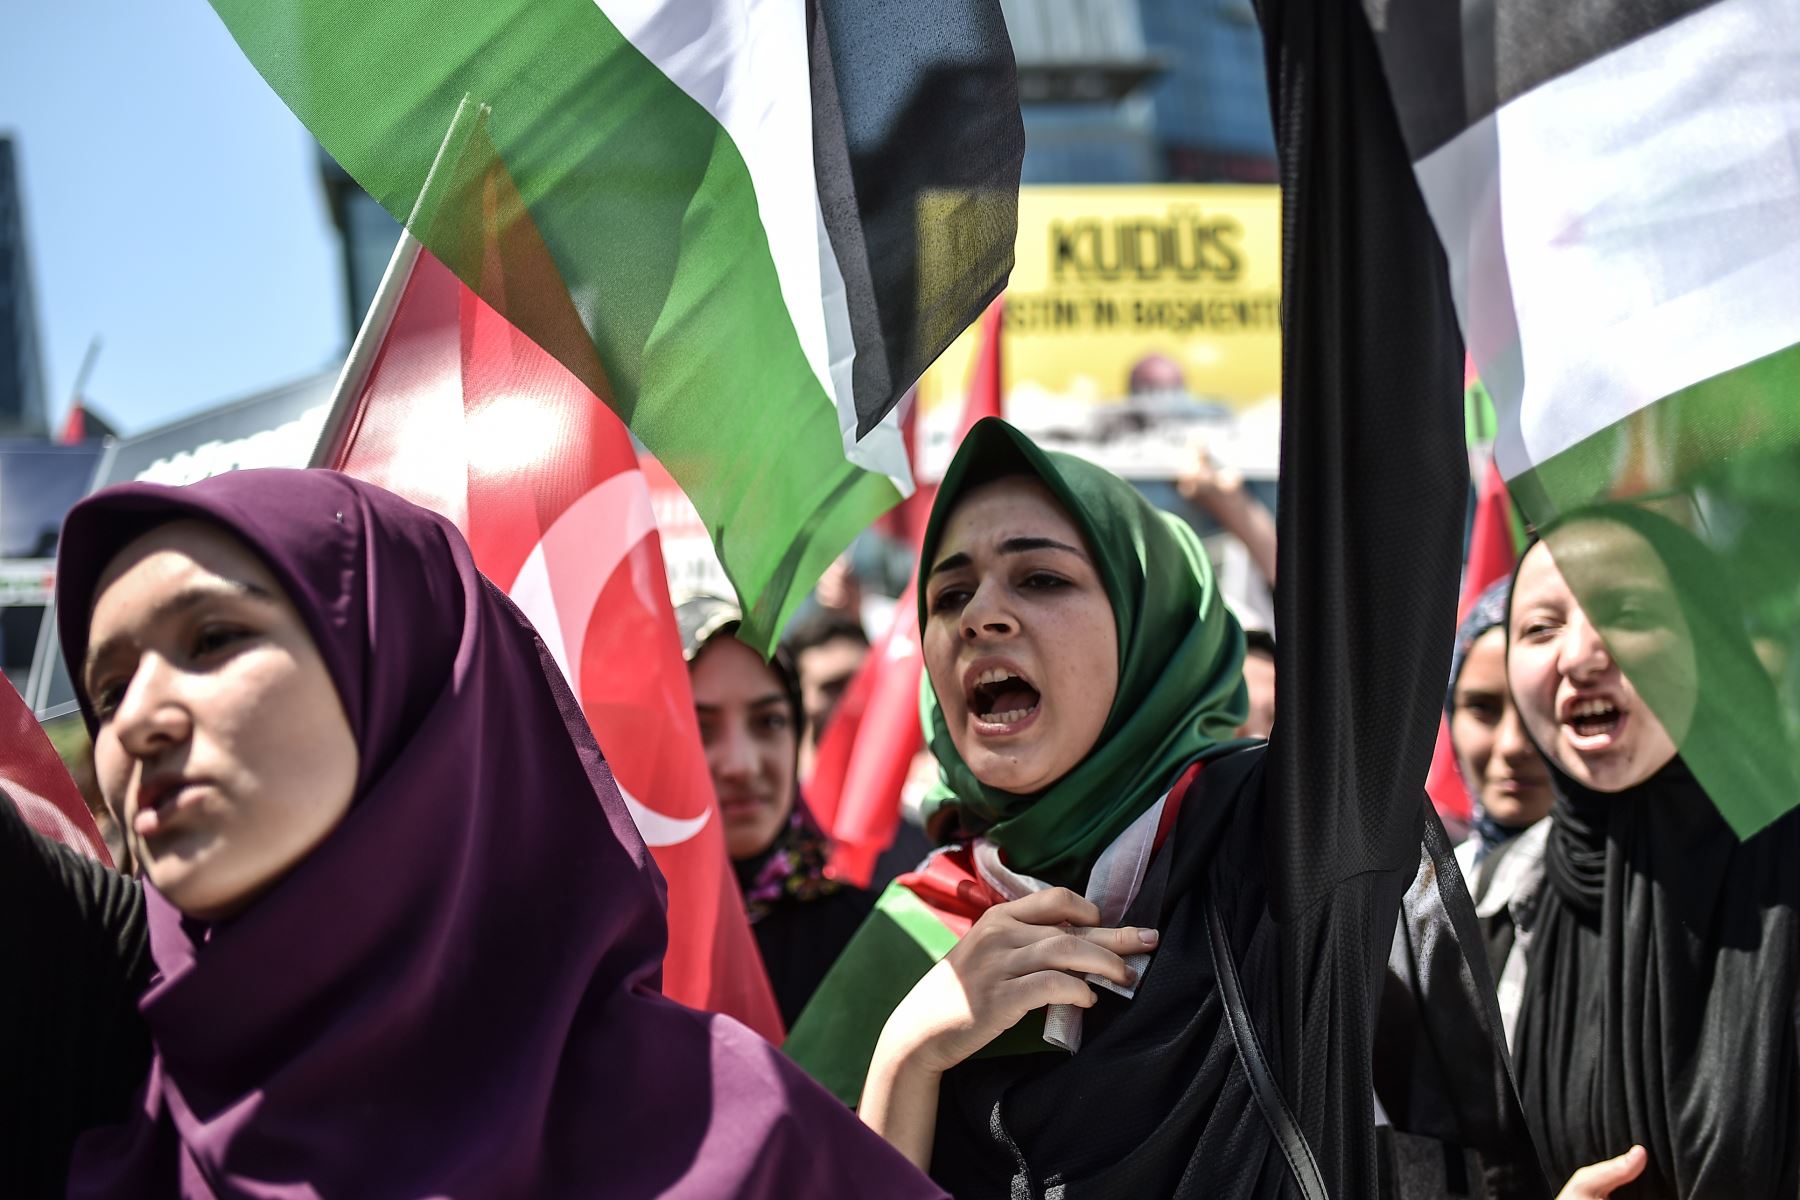 Miembros y partidarios del Partido de la Justicia y los desarrollos del partido gobernante turco  agitan banderas palestinas mientras gritan consignas frente al consulado de Israel en Estambul. AFP